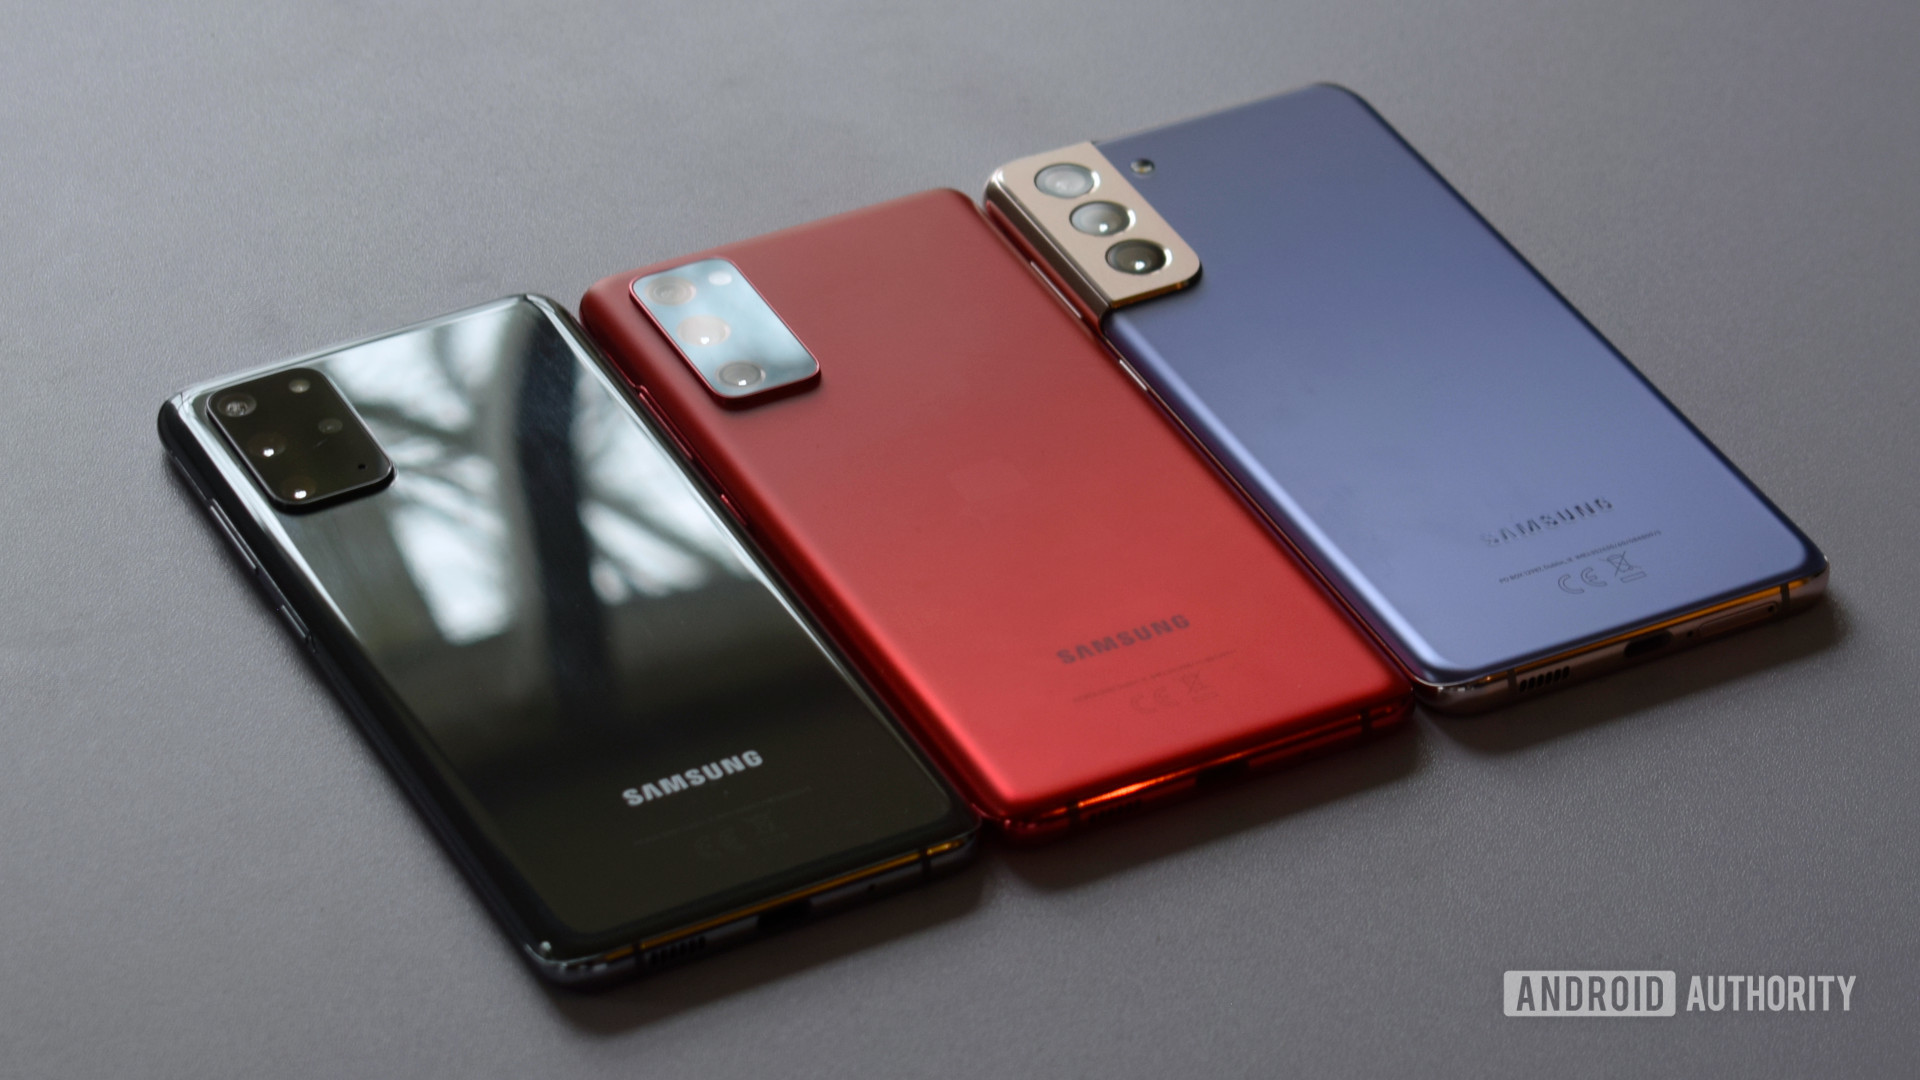  Samsung Galaxy S21 Plus vs Galaxy S20 Plus vs Galaxy S20 FE 